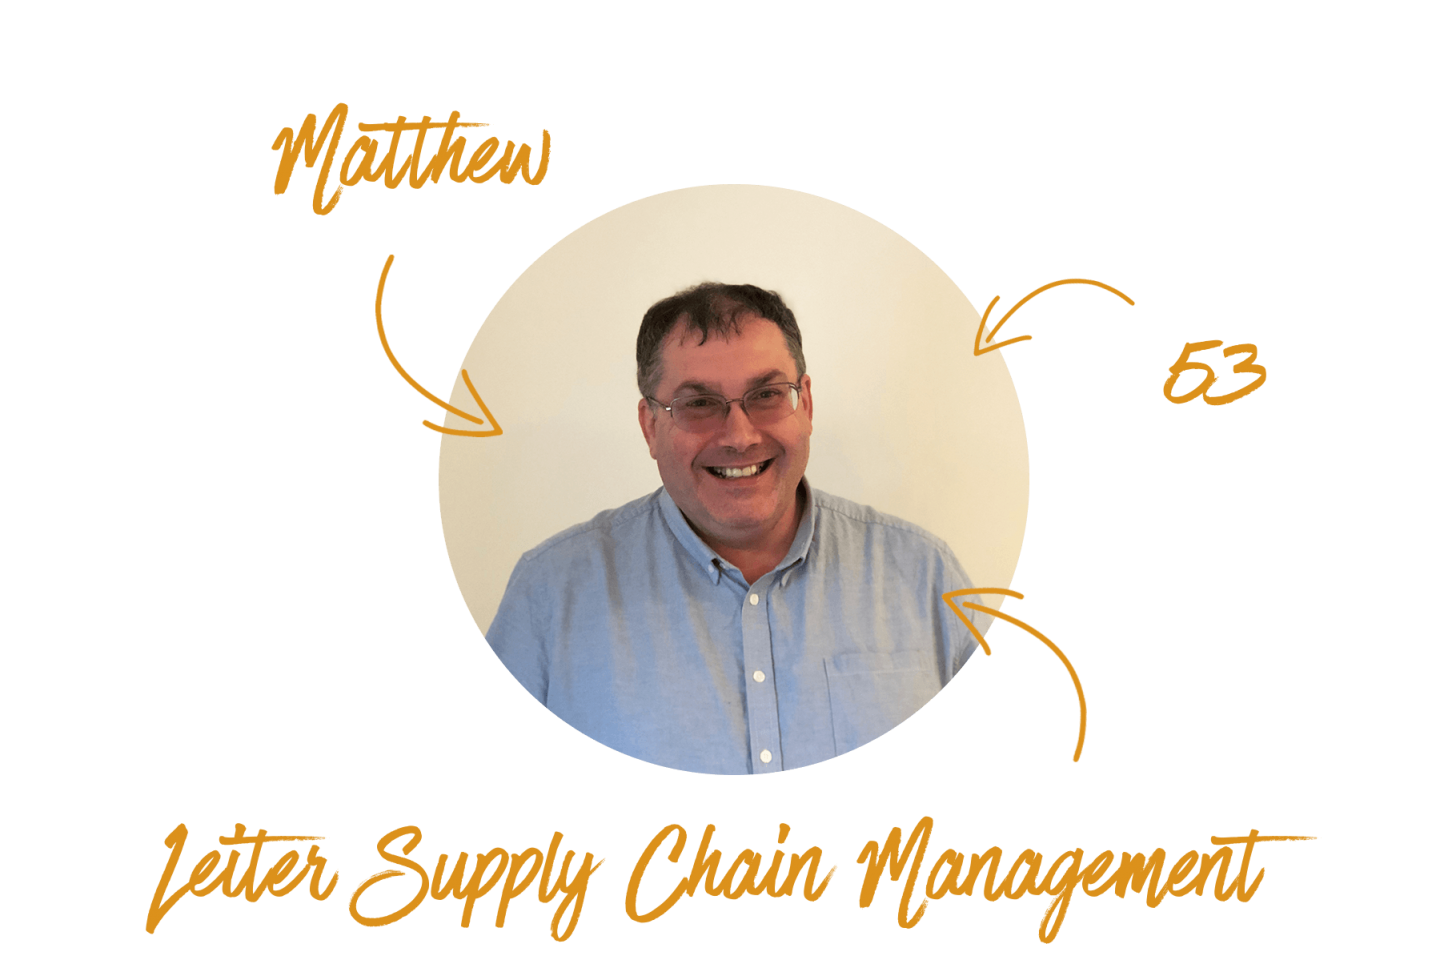 Matthew Hamelin Brands Ltd Supply Chain Management